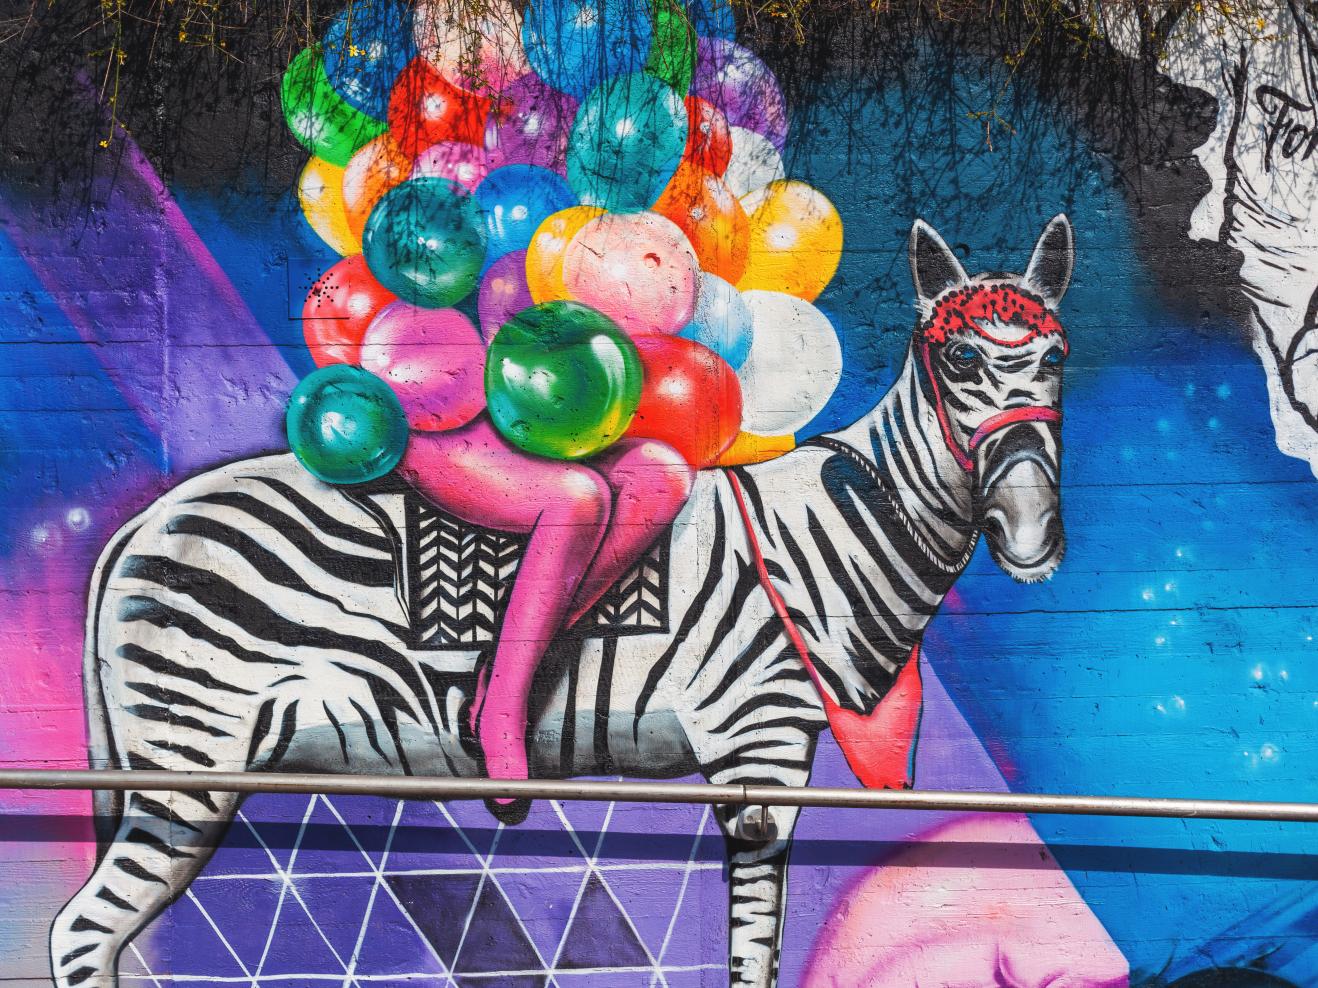 Buntes Graffiti im Stadtbild: Eine Person auf einem Zebra, die Arme übervoll mit bunten Luftballons.